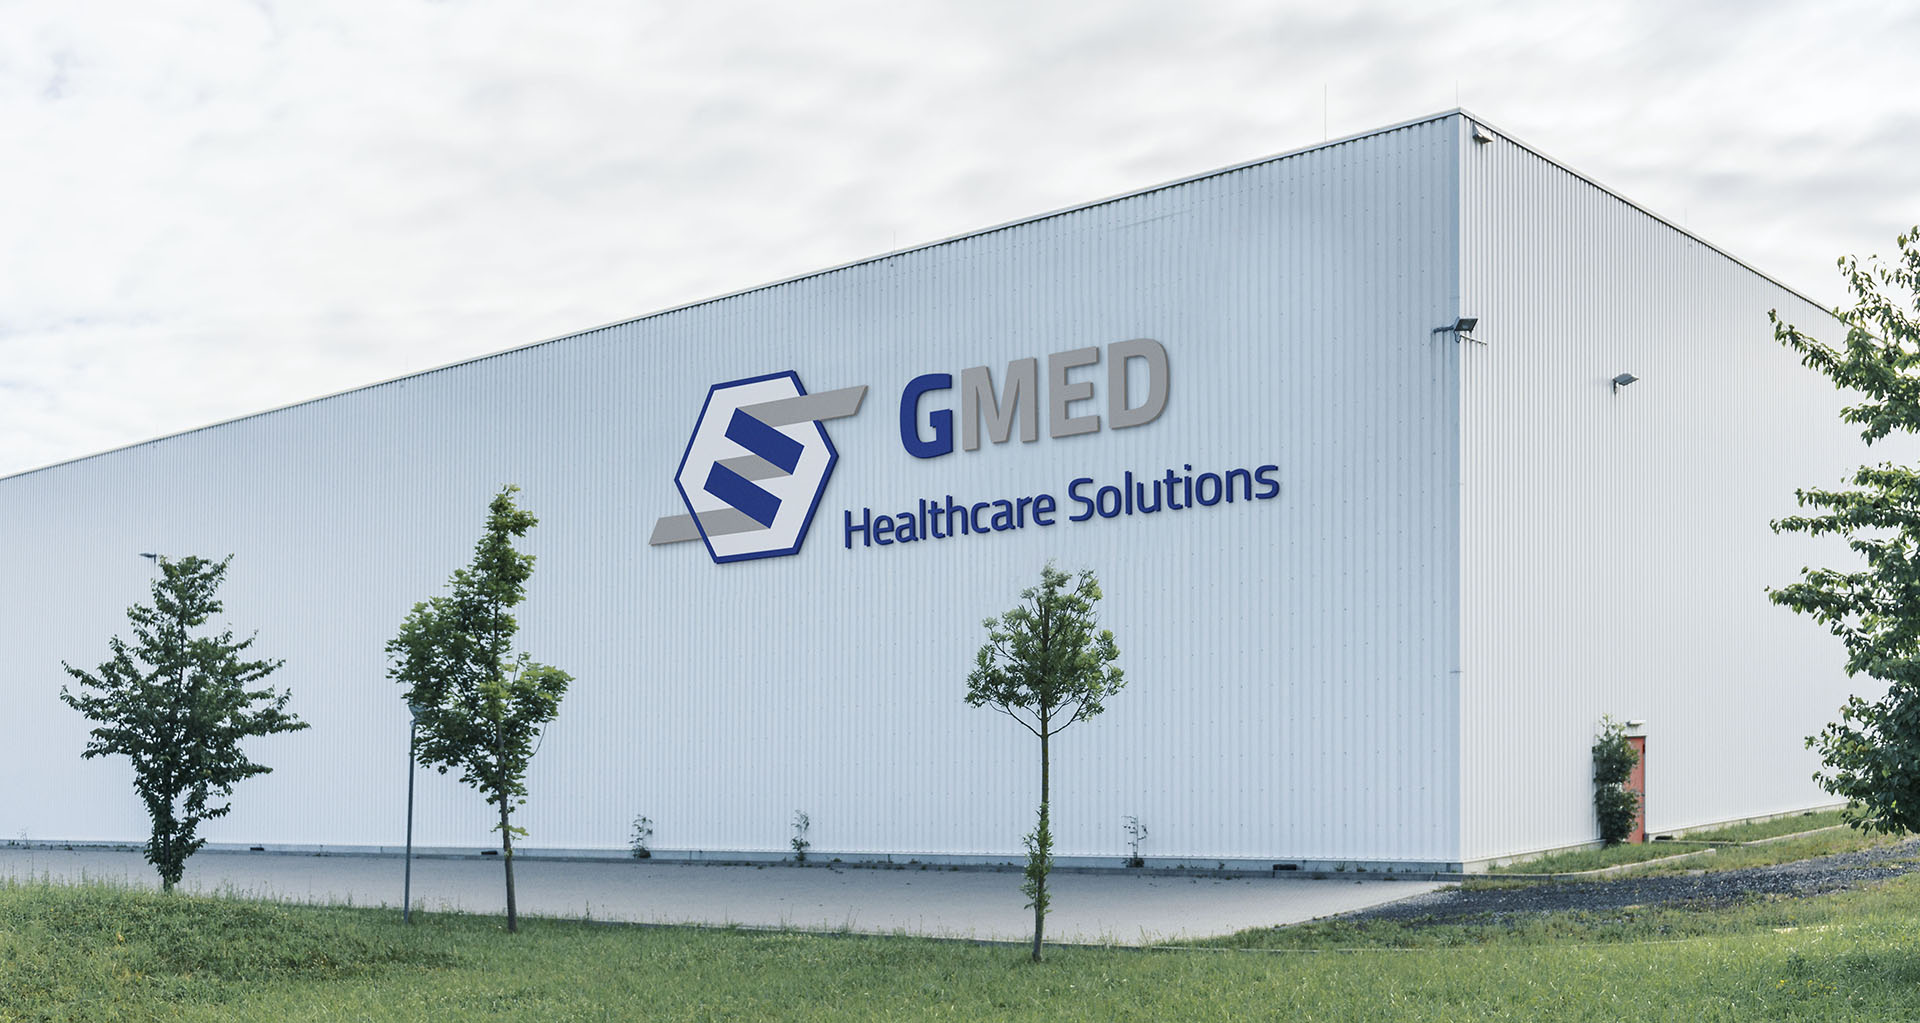 Gmed Healthcare Solutions Gmed Healthcare Solutions